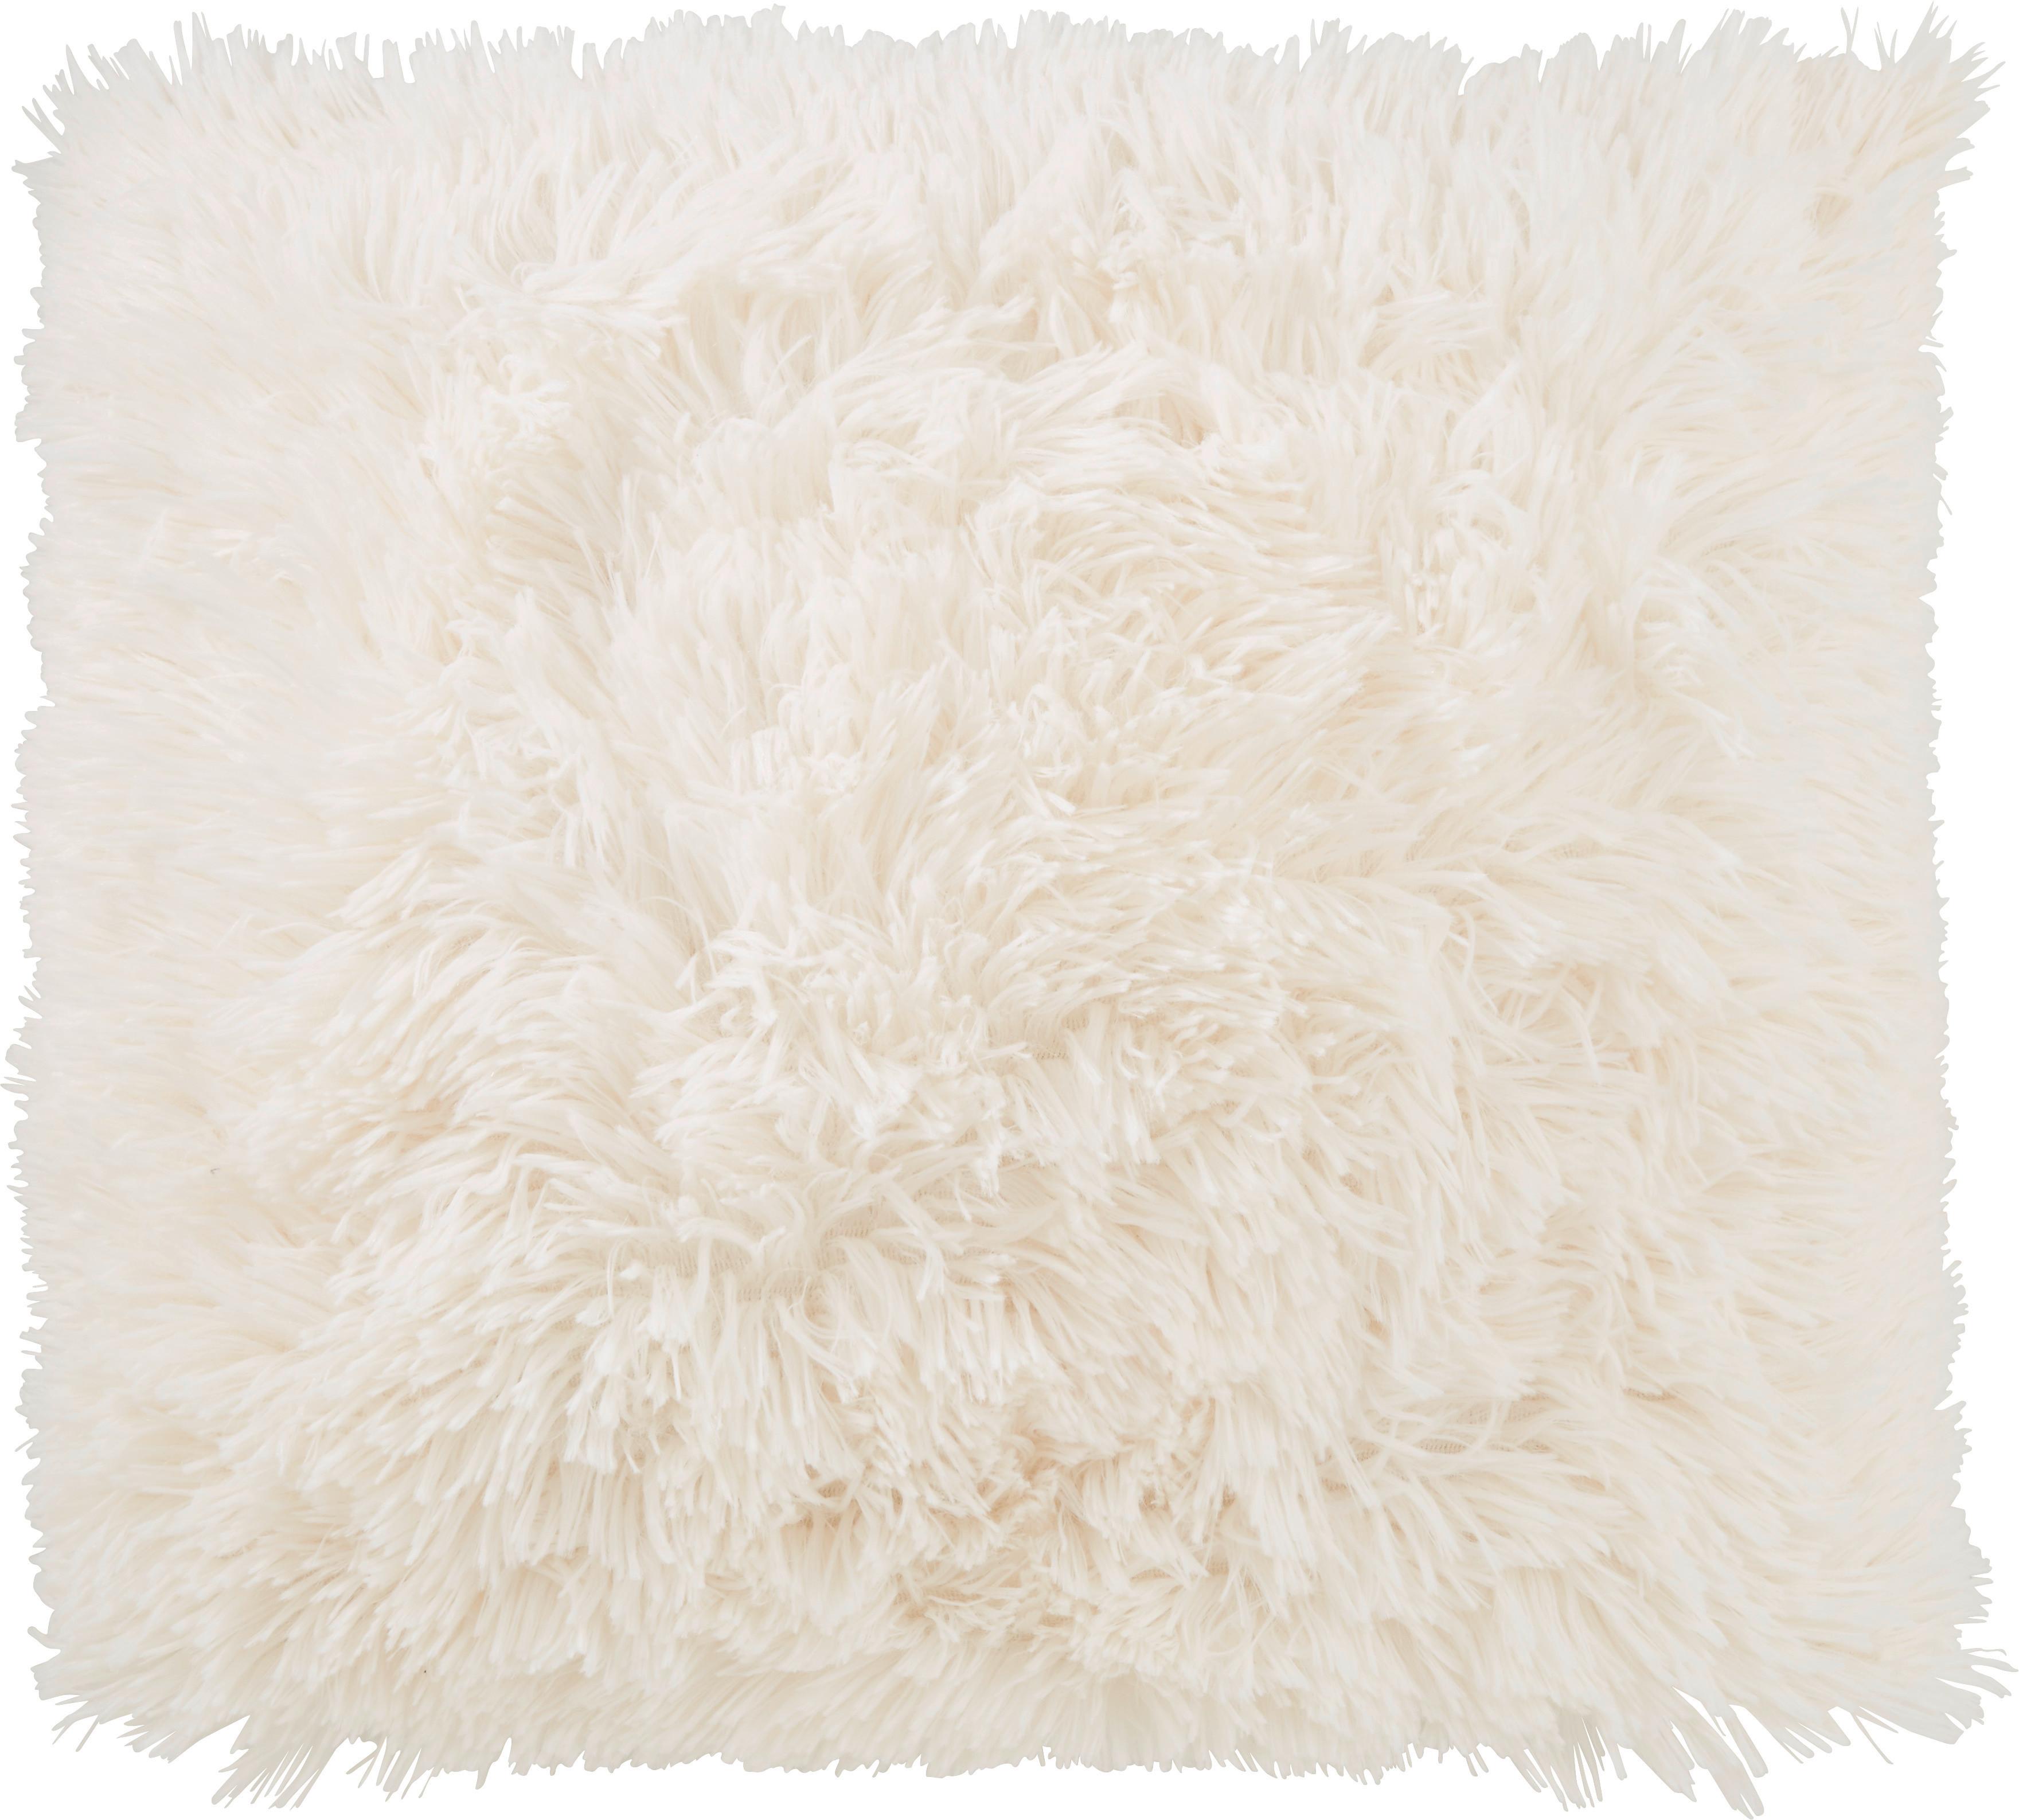 Polštář Ozdobný Fluffy, 45/45cm, Bílá - bílá, textil (45/45cm) - Modern Living